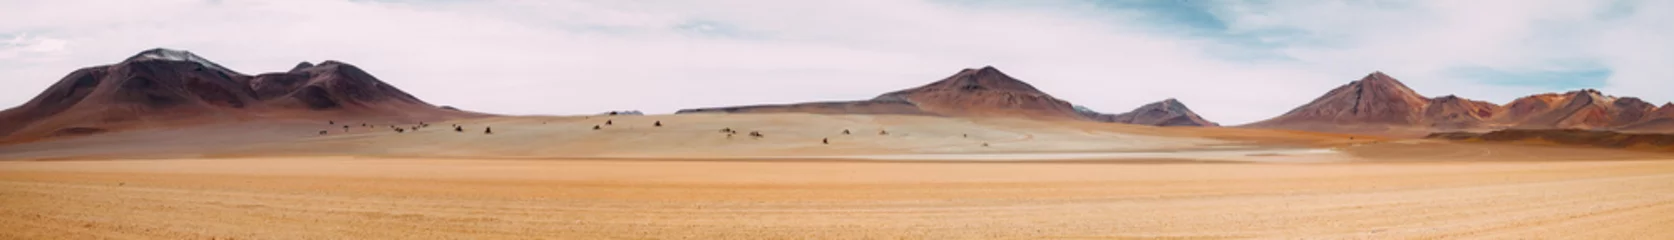 Fototapete Sandige Wüste Die Weite des Nichts - Atacama-Wüste - Bolivien